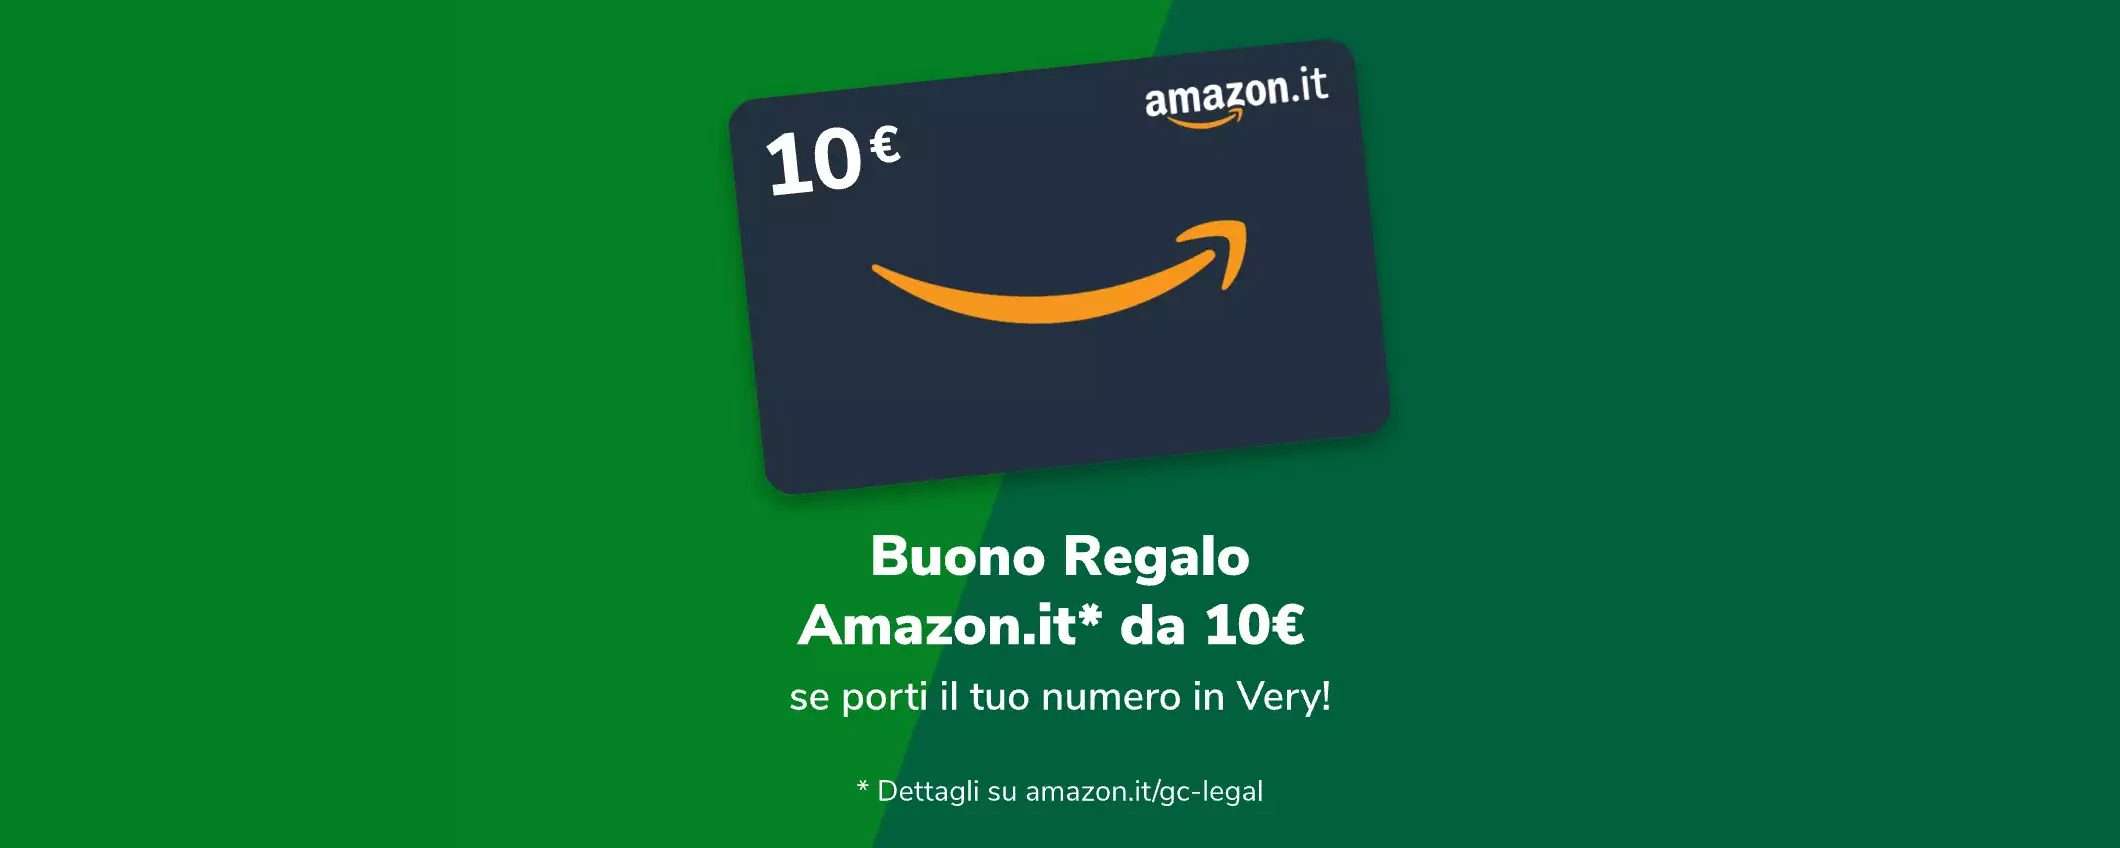 Very Mobile ripropone il buono Amazon da 10 euro per i nuovi clienti